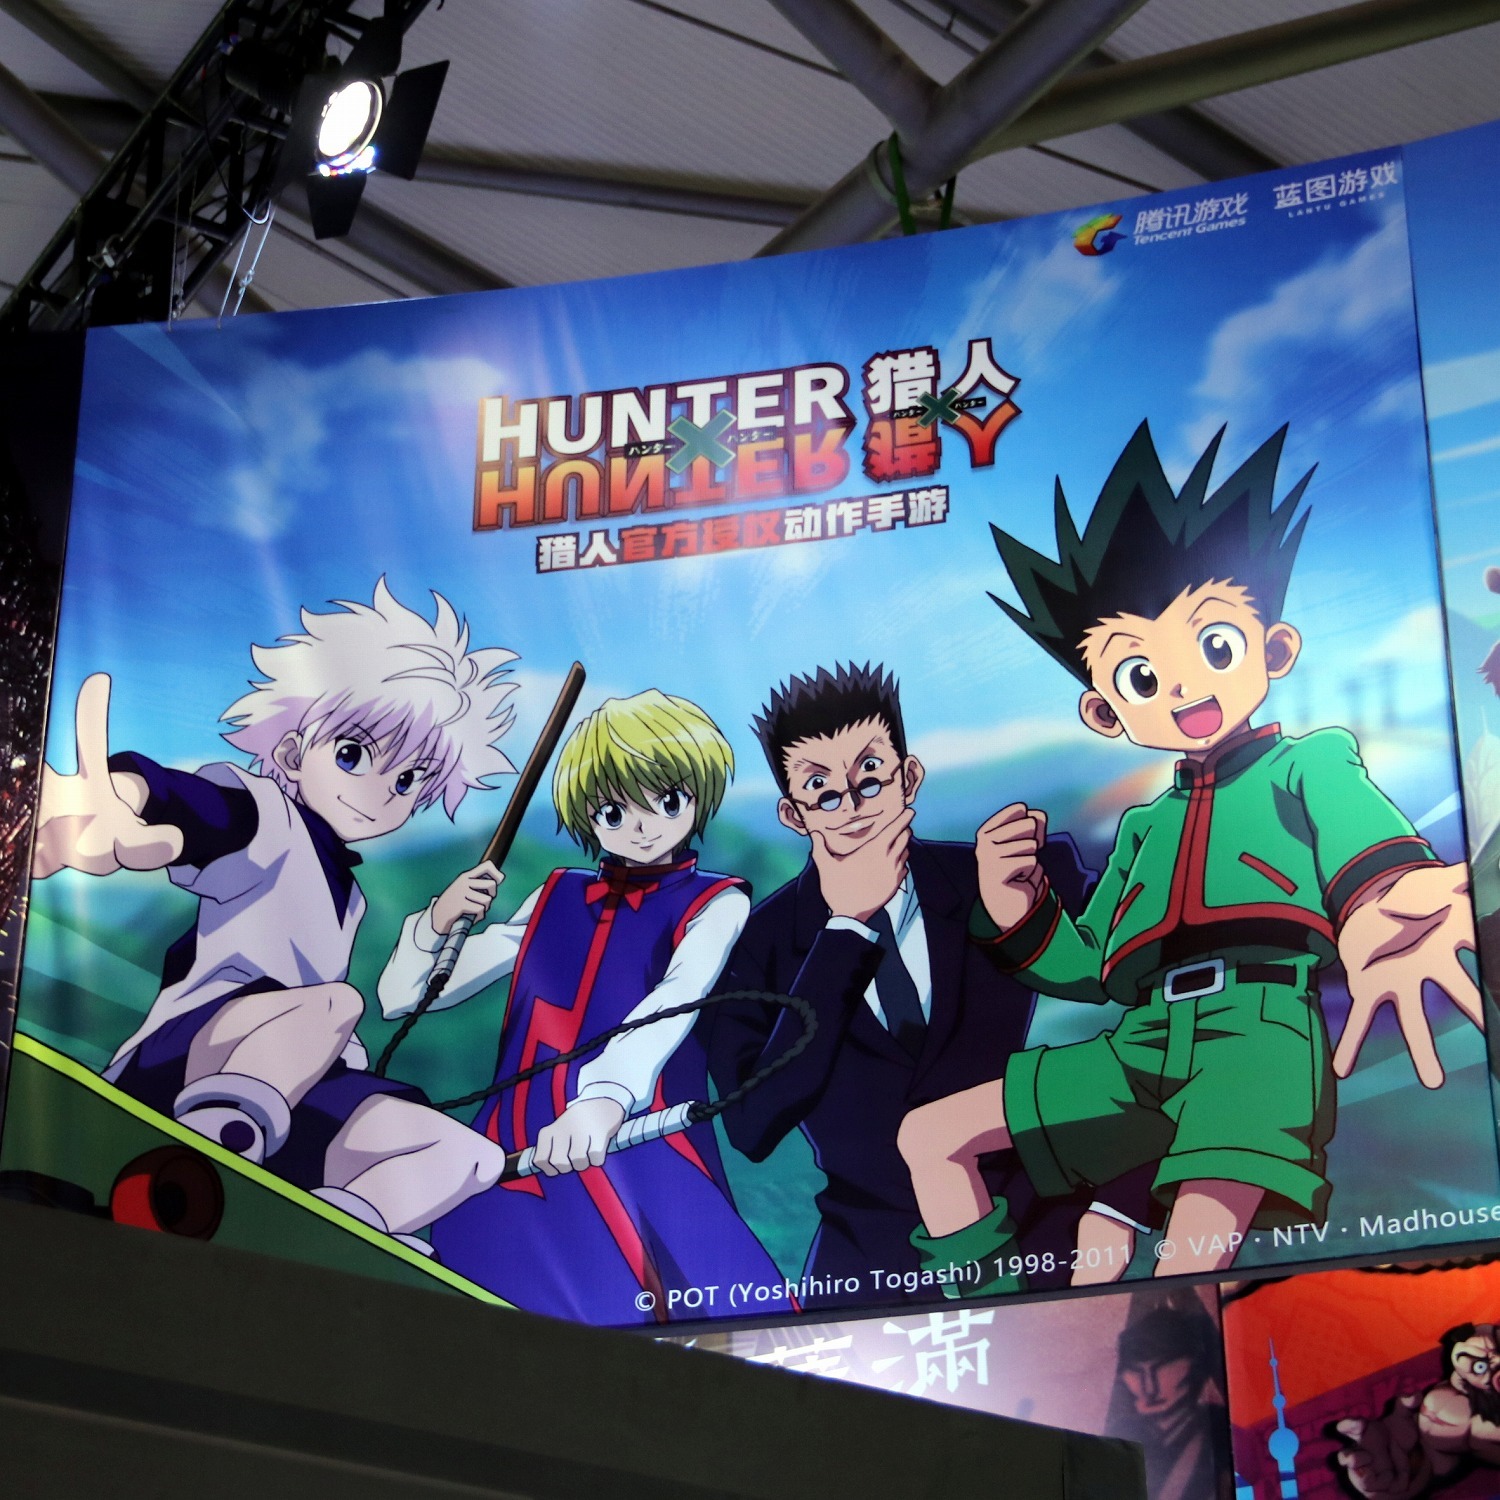 A incrível qualidade do RPG de Hunter x Hunter da Tencent - LeoAnvic